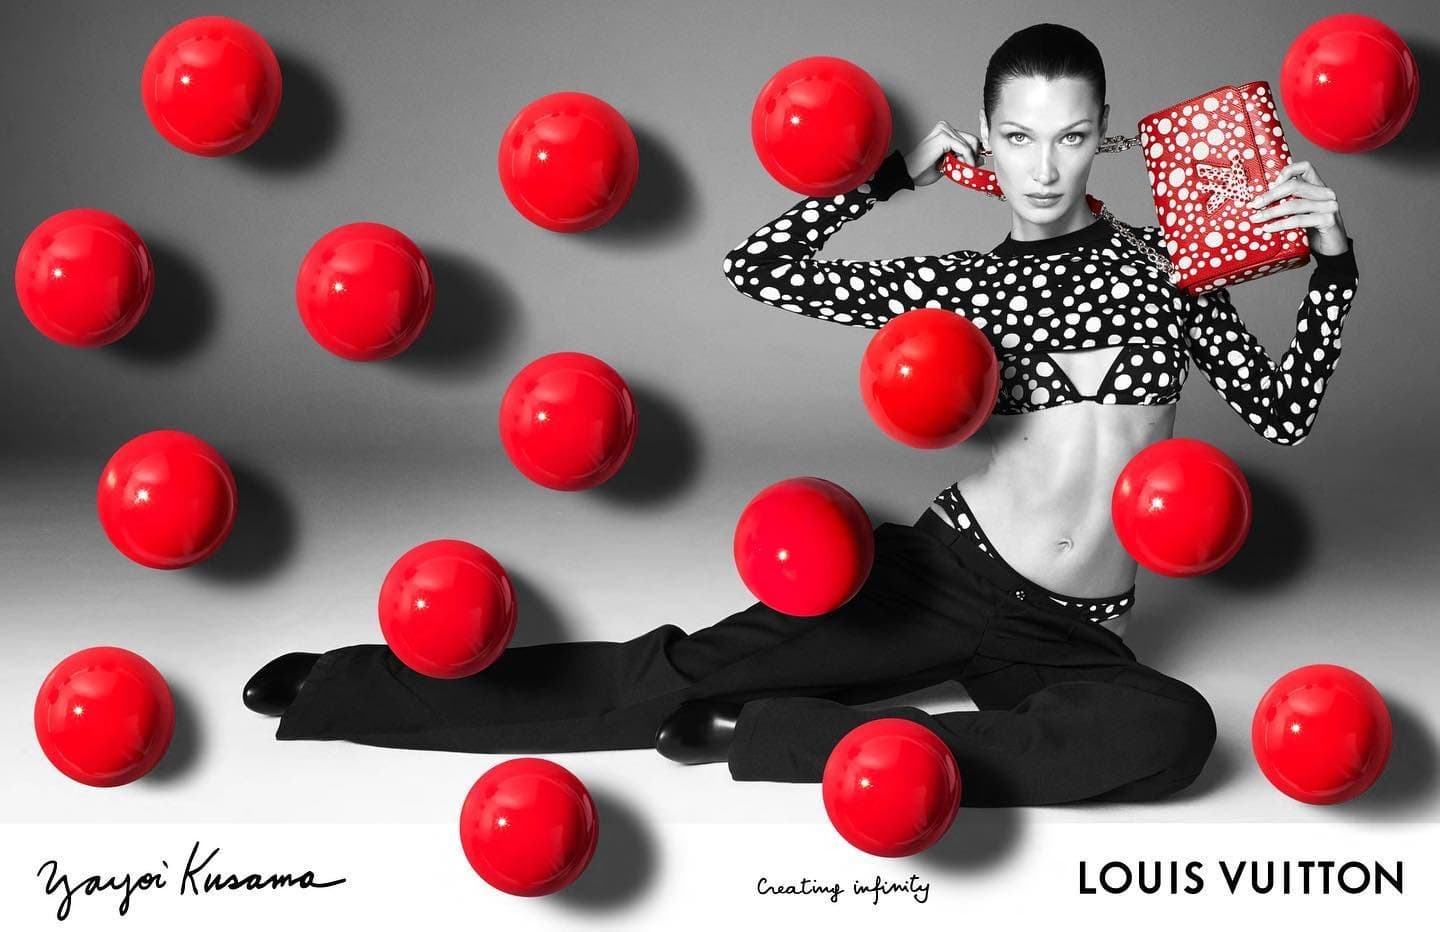 Louis Vuitton x Yayoi Kusama Part 2 Ad Campaign